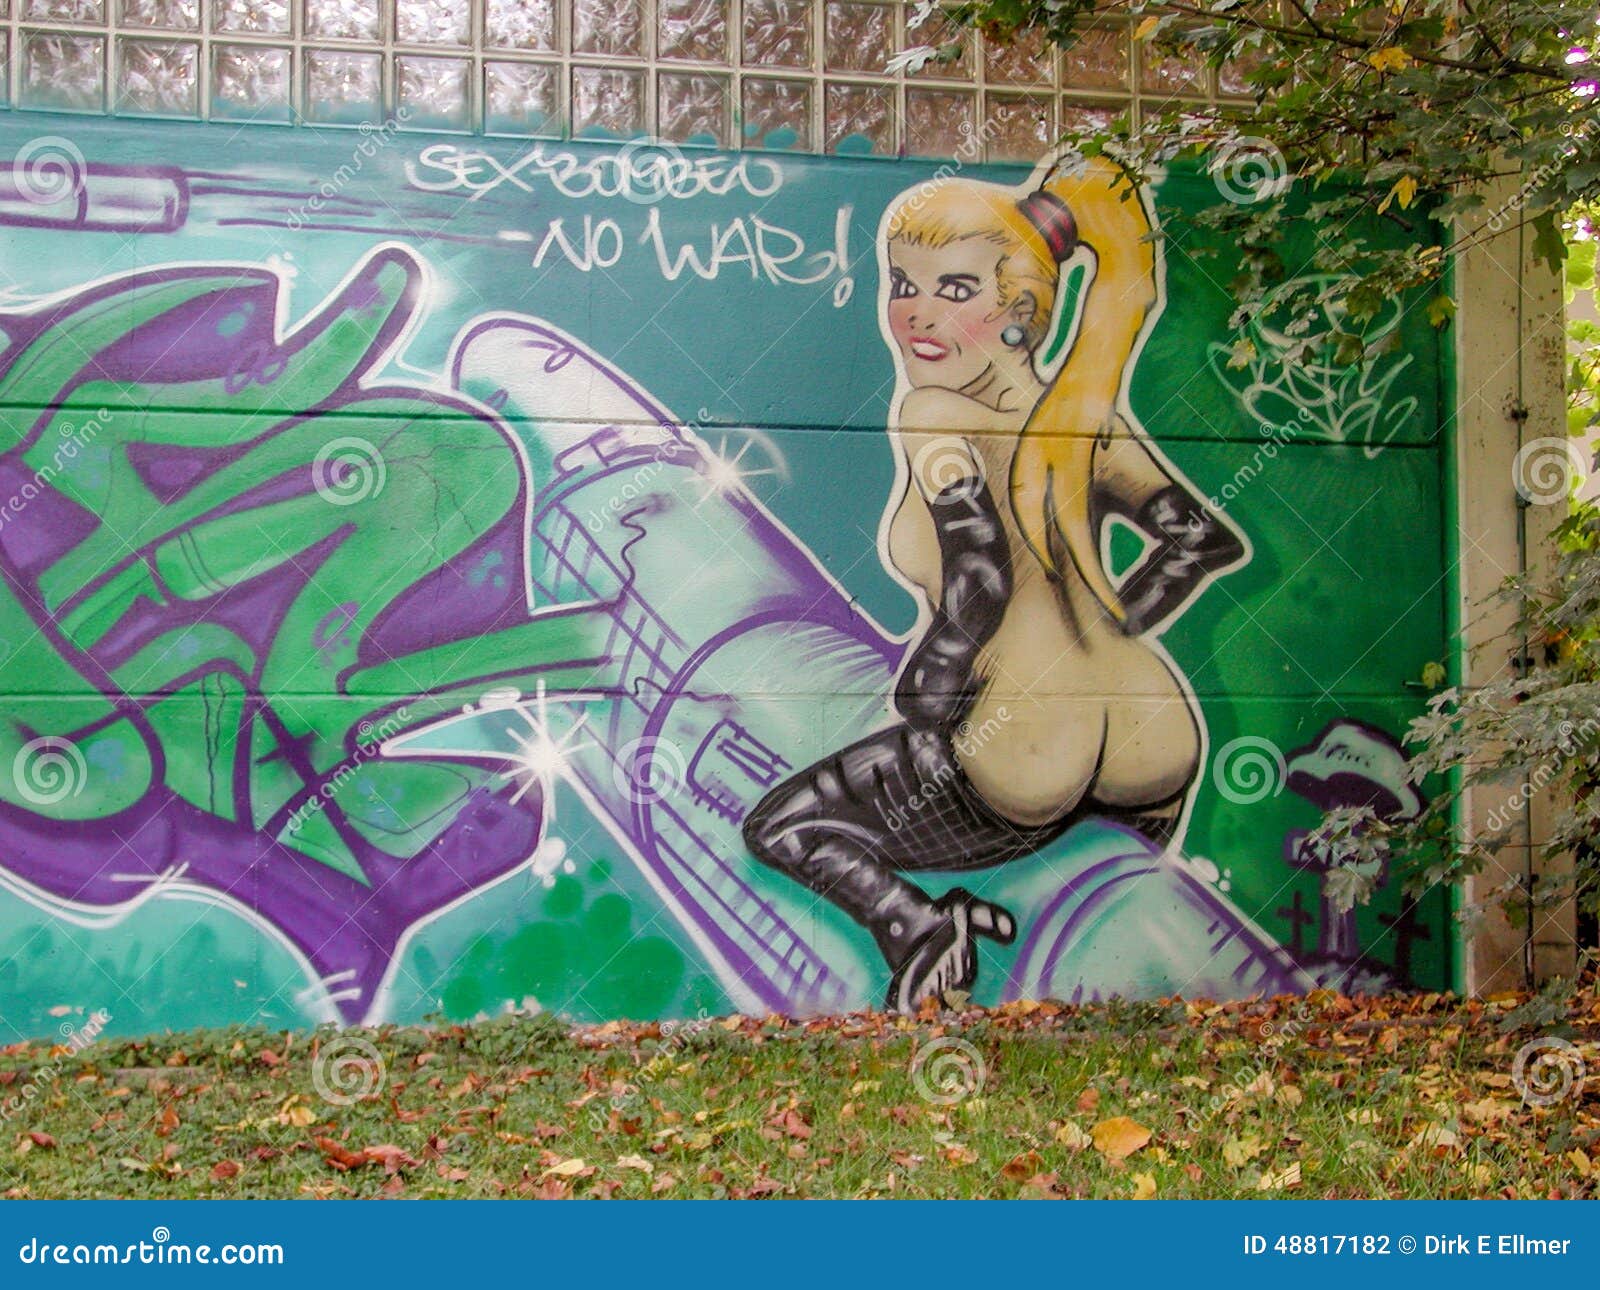 граффити на голых женщинах фото 32